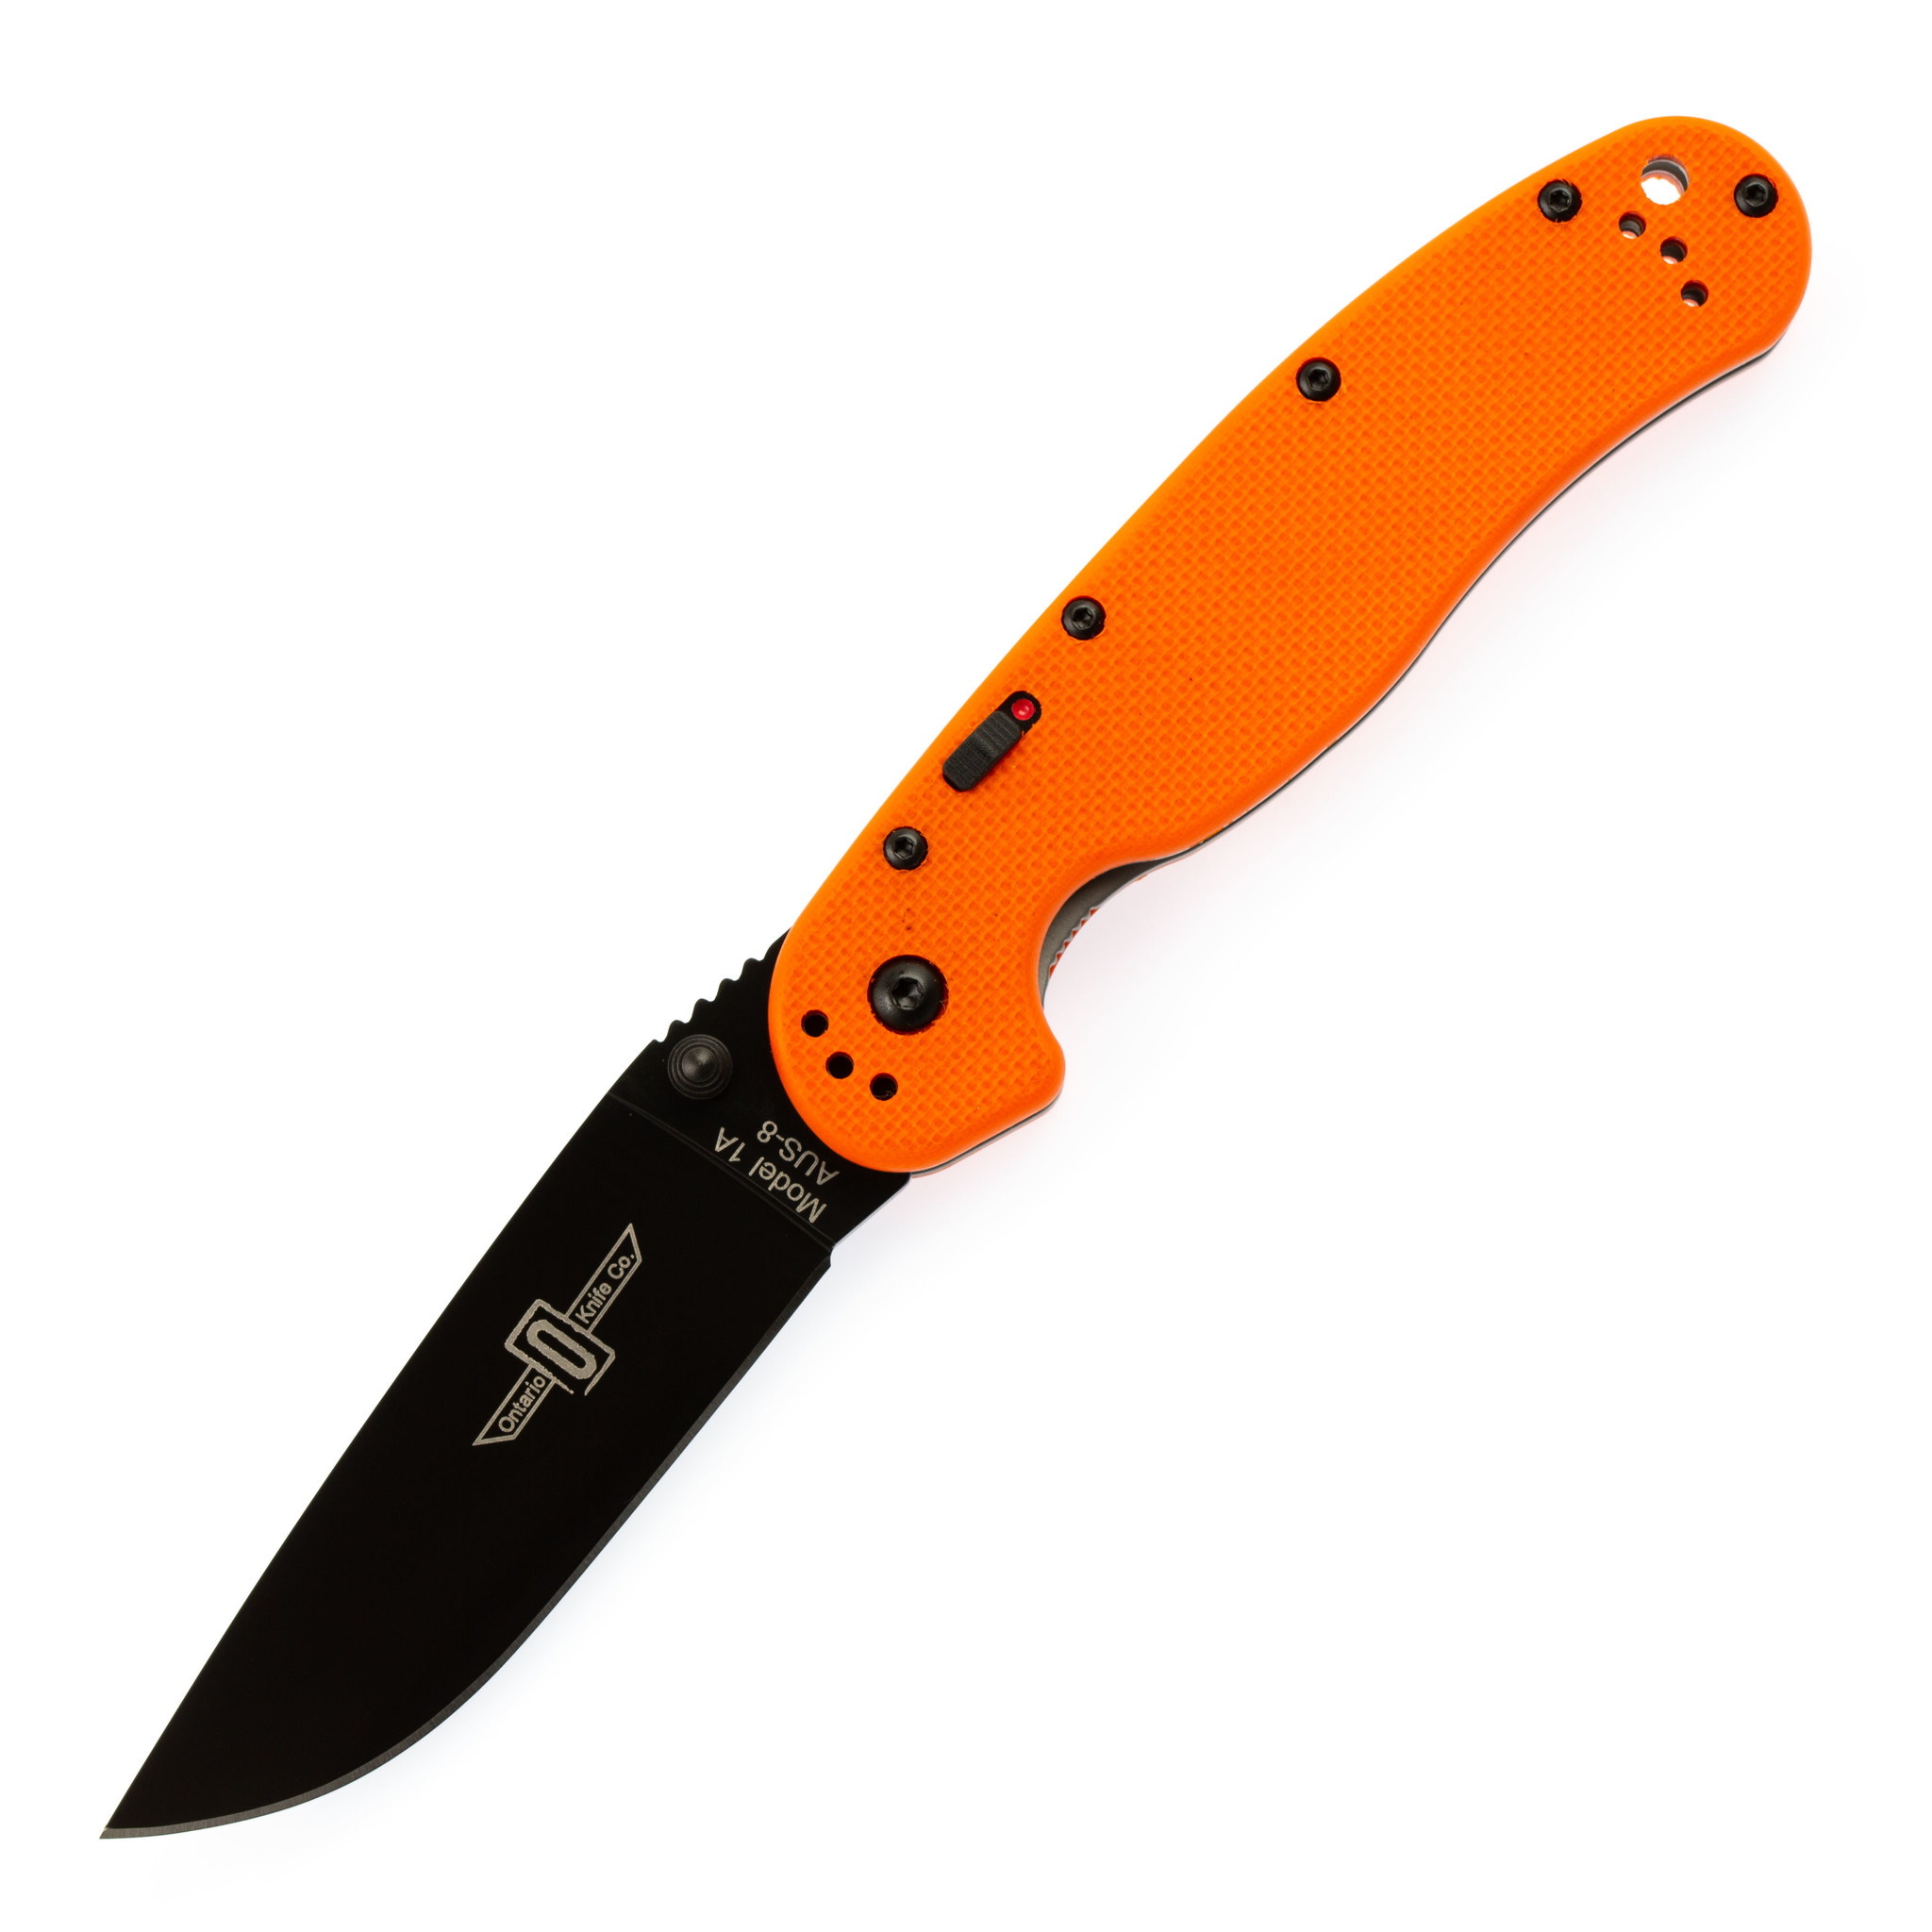 Полуавтоматический складной нож Ontario RAT-1A, Assisted. Black Blade, Orange G-10 Handle